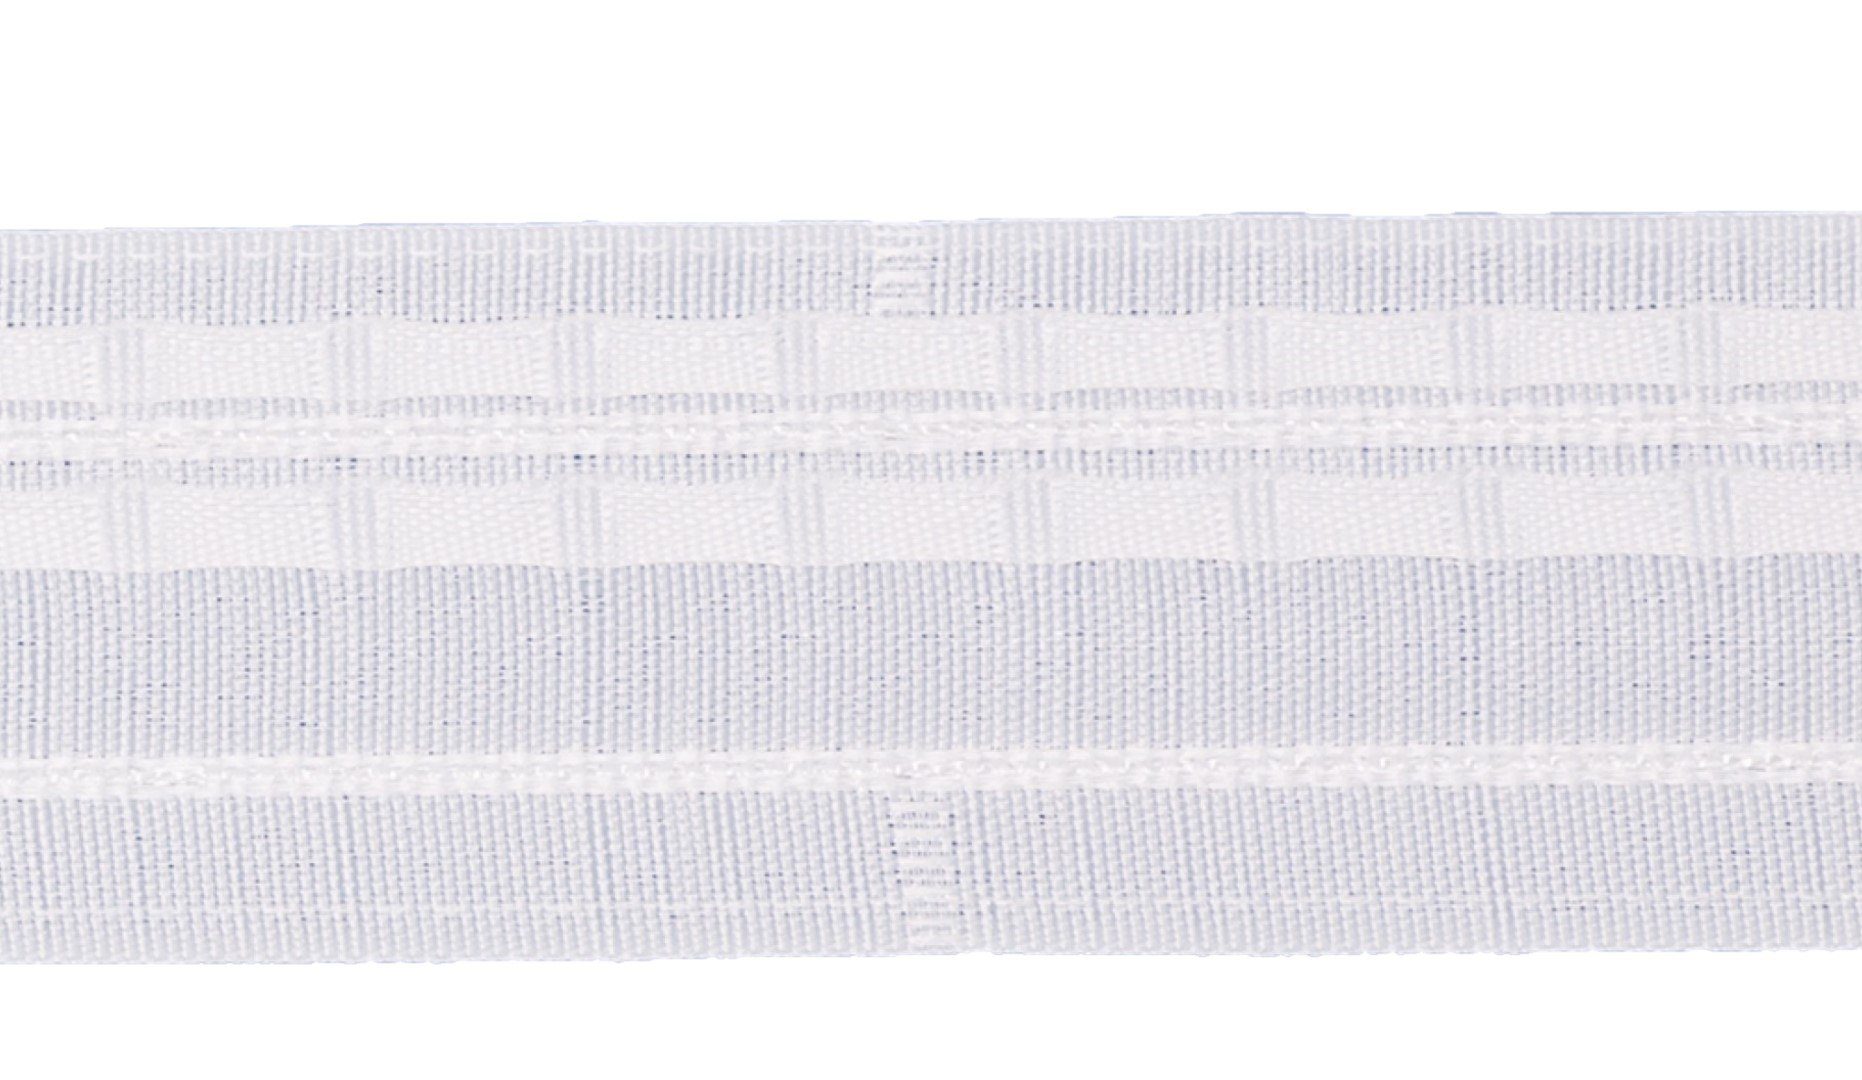 Kräuselband Universal mm rewagi, Rapport: 98 Breite: Gardinenstangen, 5 - Verkaufseinheit: Kräuselband, Meter Vorhänge, Seitenschals, L128, Gardinenband mm 50 Gardinen